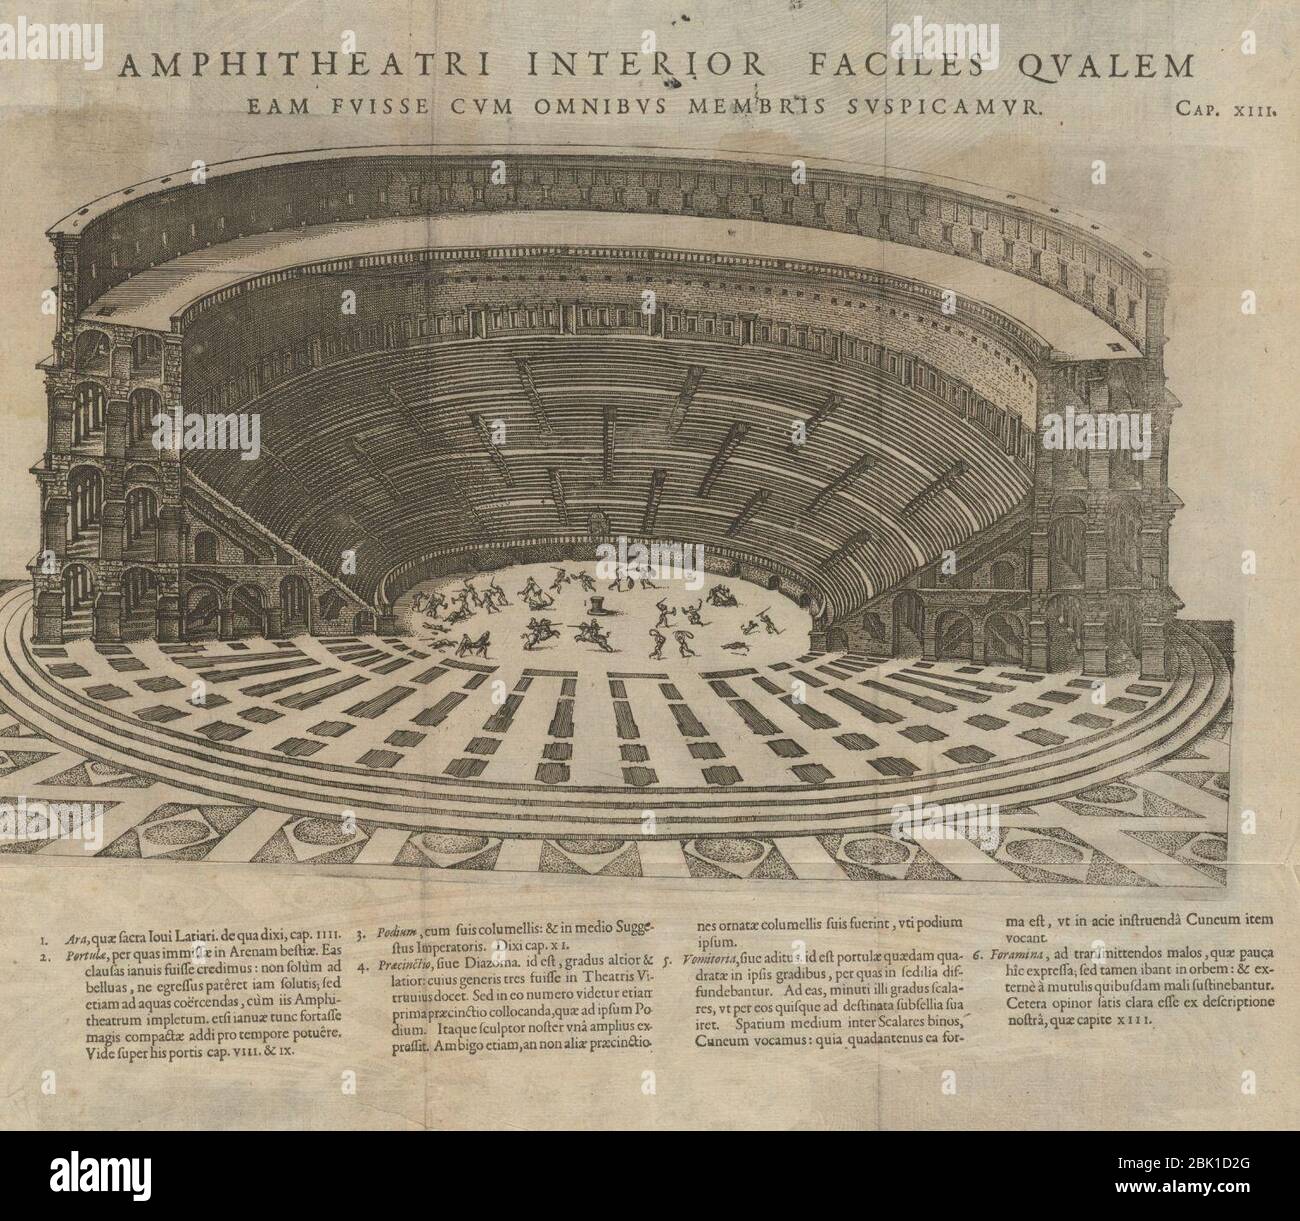 Houghton NC5 L6698 582se - Justus Lipsius, amphitheatri interior, 1592. Stock Photo